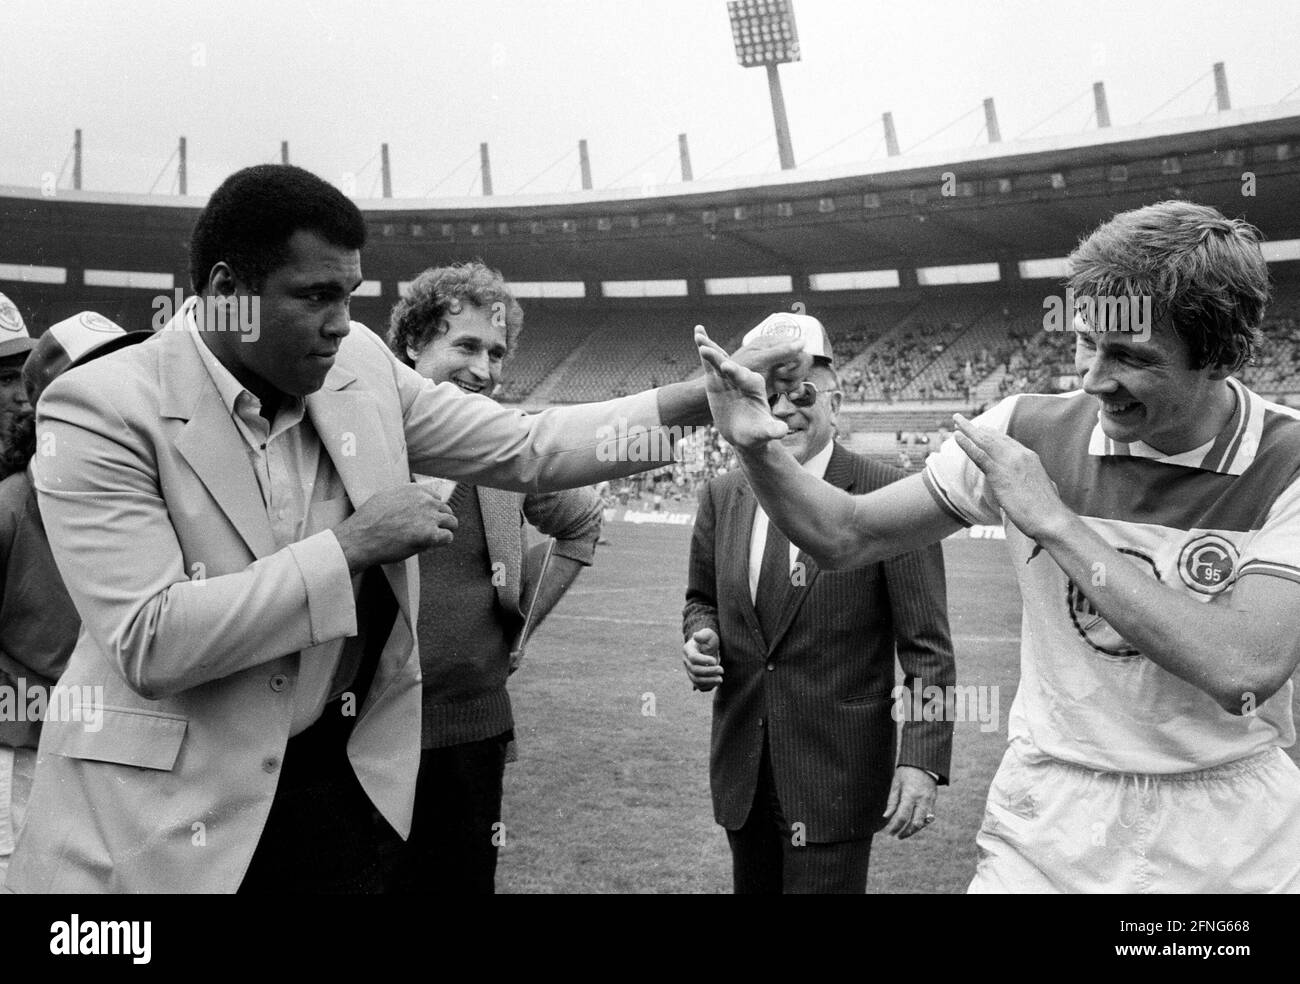 La leggenda della boxe Muhammad Ali (Cassius Clay) ha visitato il Rheinstadion a Duesseldorf in occasione della partita di Bundesliga Fortuna - Eintr. Braunschweig su 15.9.1984 e sfidato Atli Edvaldsson ad una partita di sparring. [traduzione automatizzata] Foto Stock